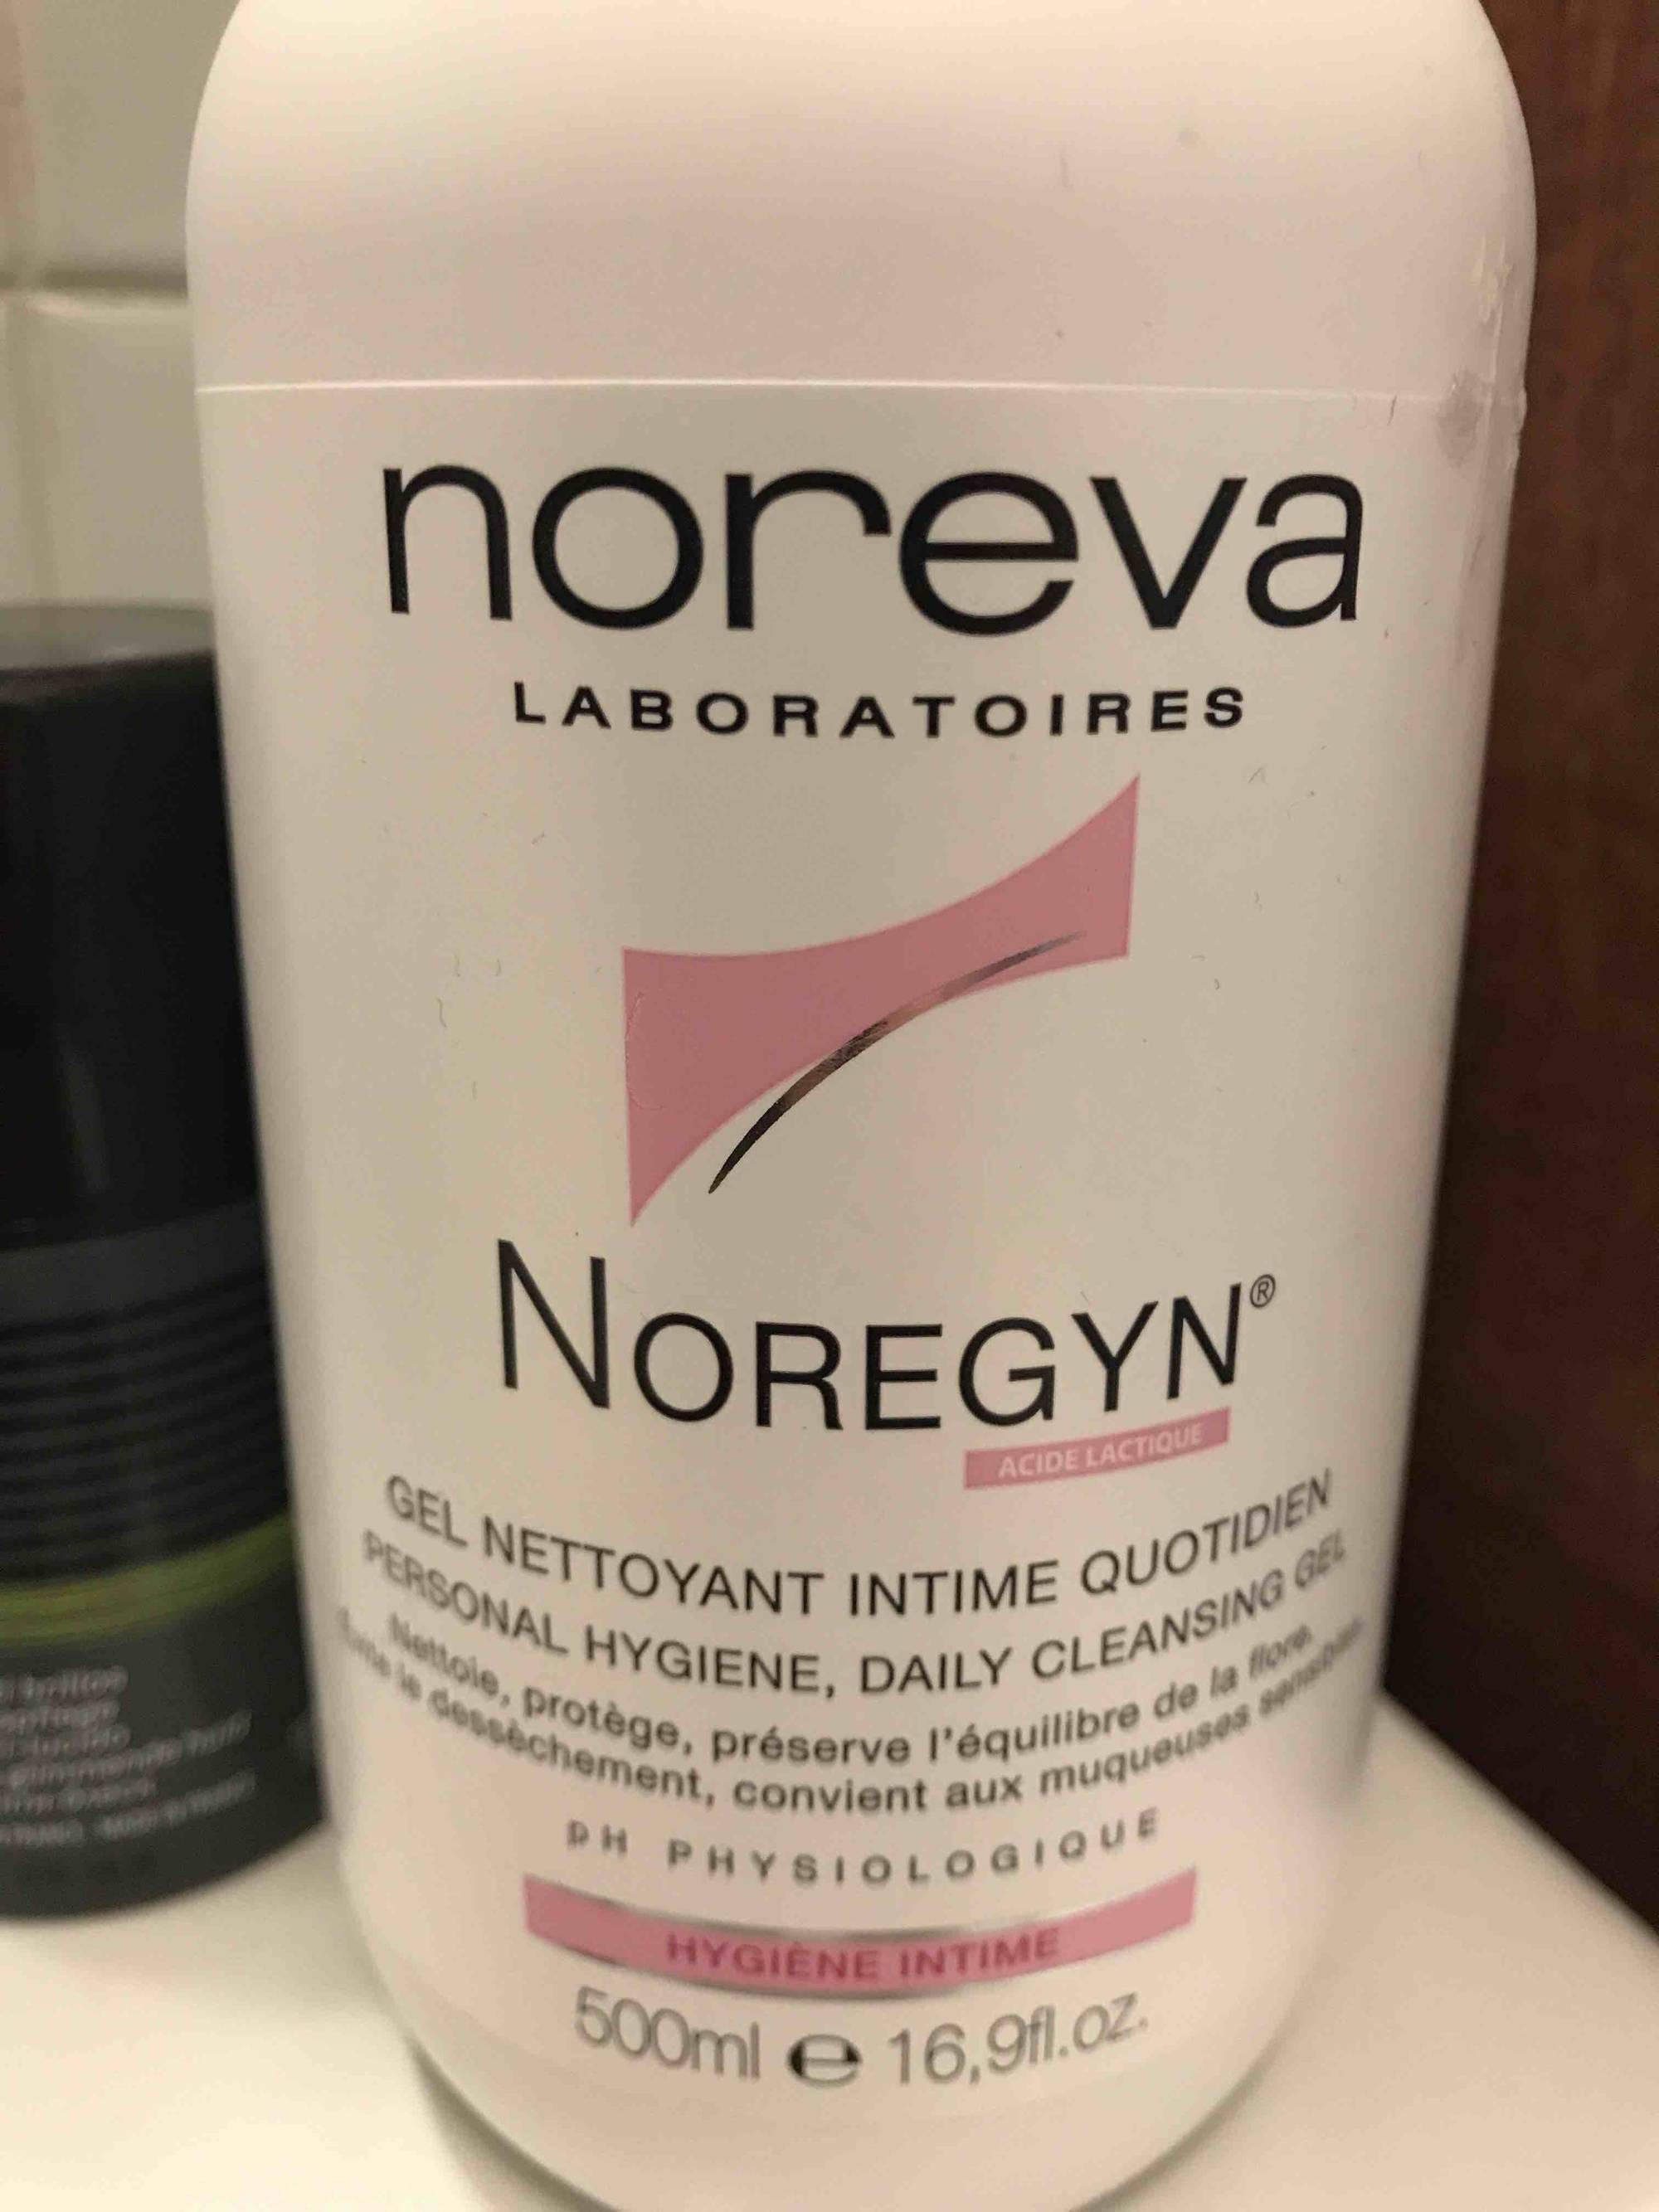 NOREVA - Noregyn - Gel nettoyant intime quotidien